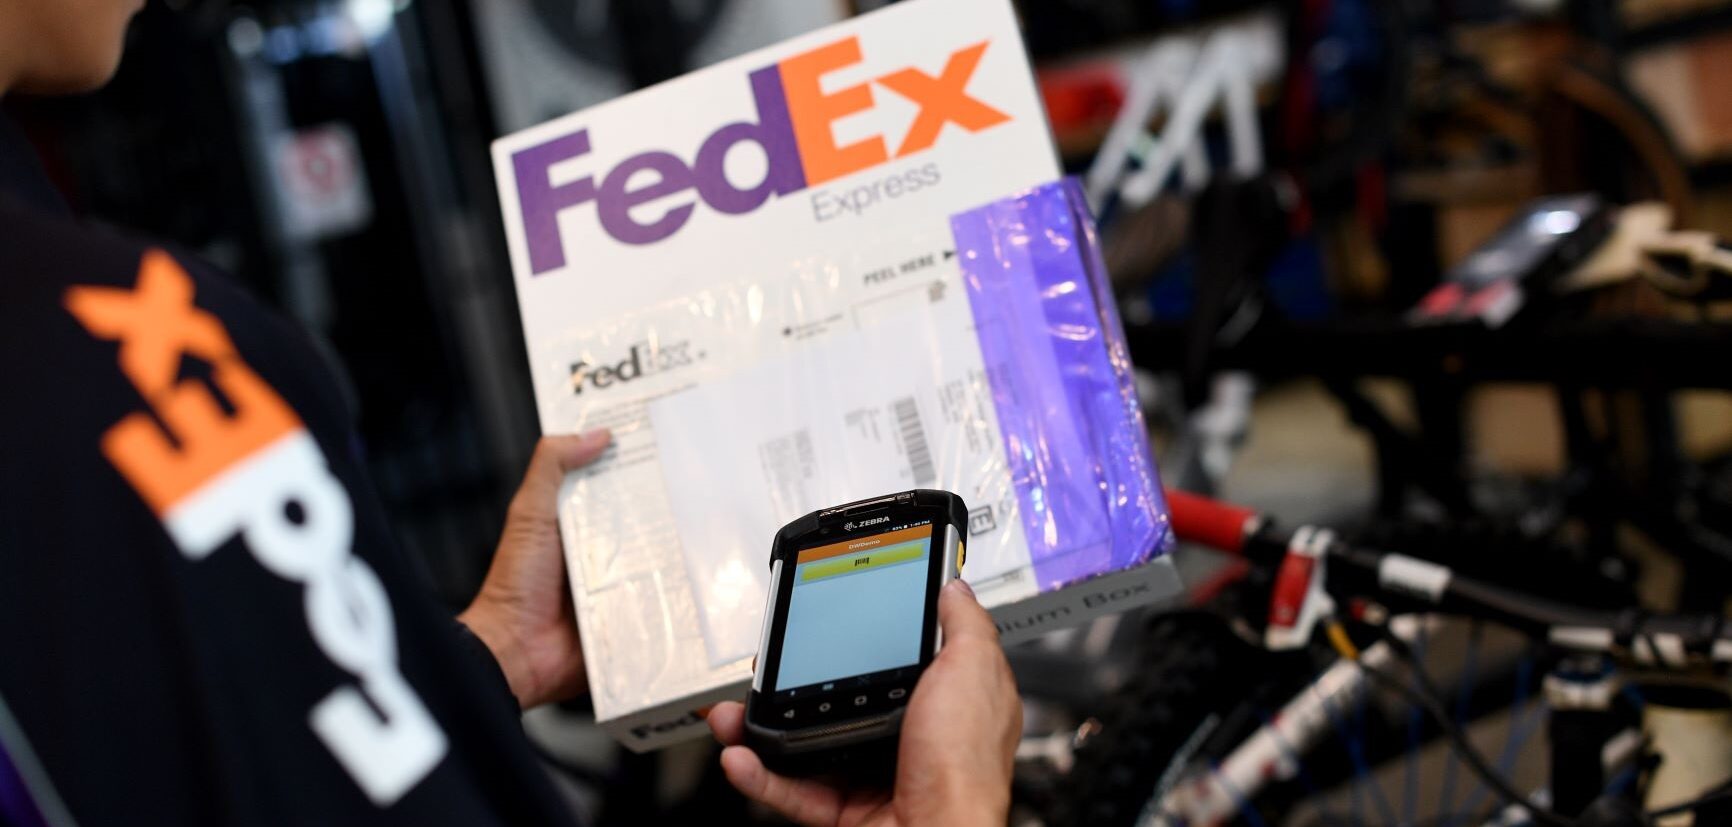 Fedex Latest Global